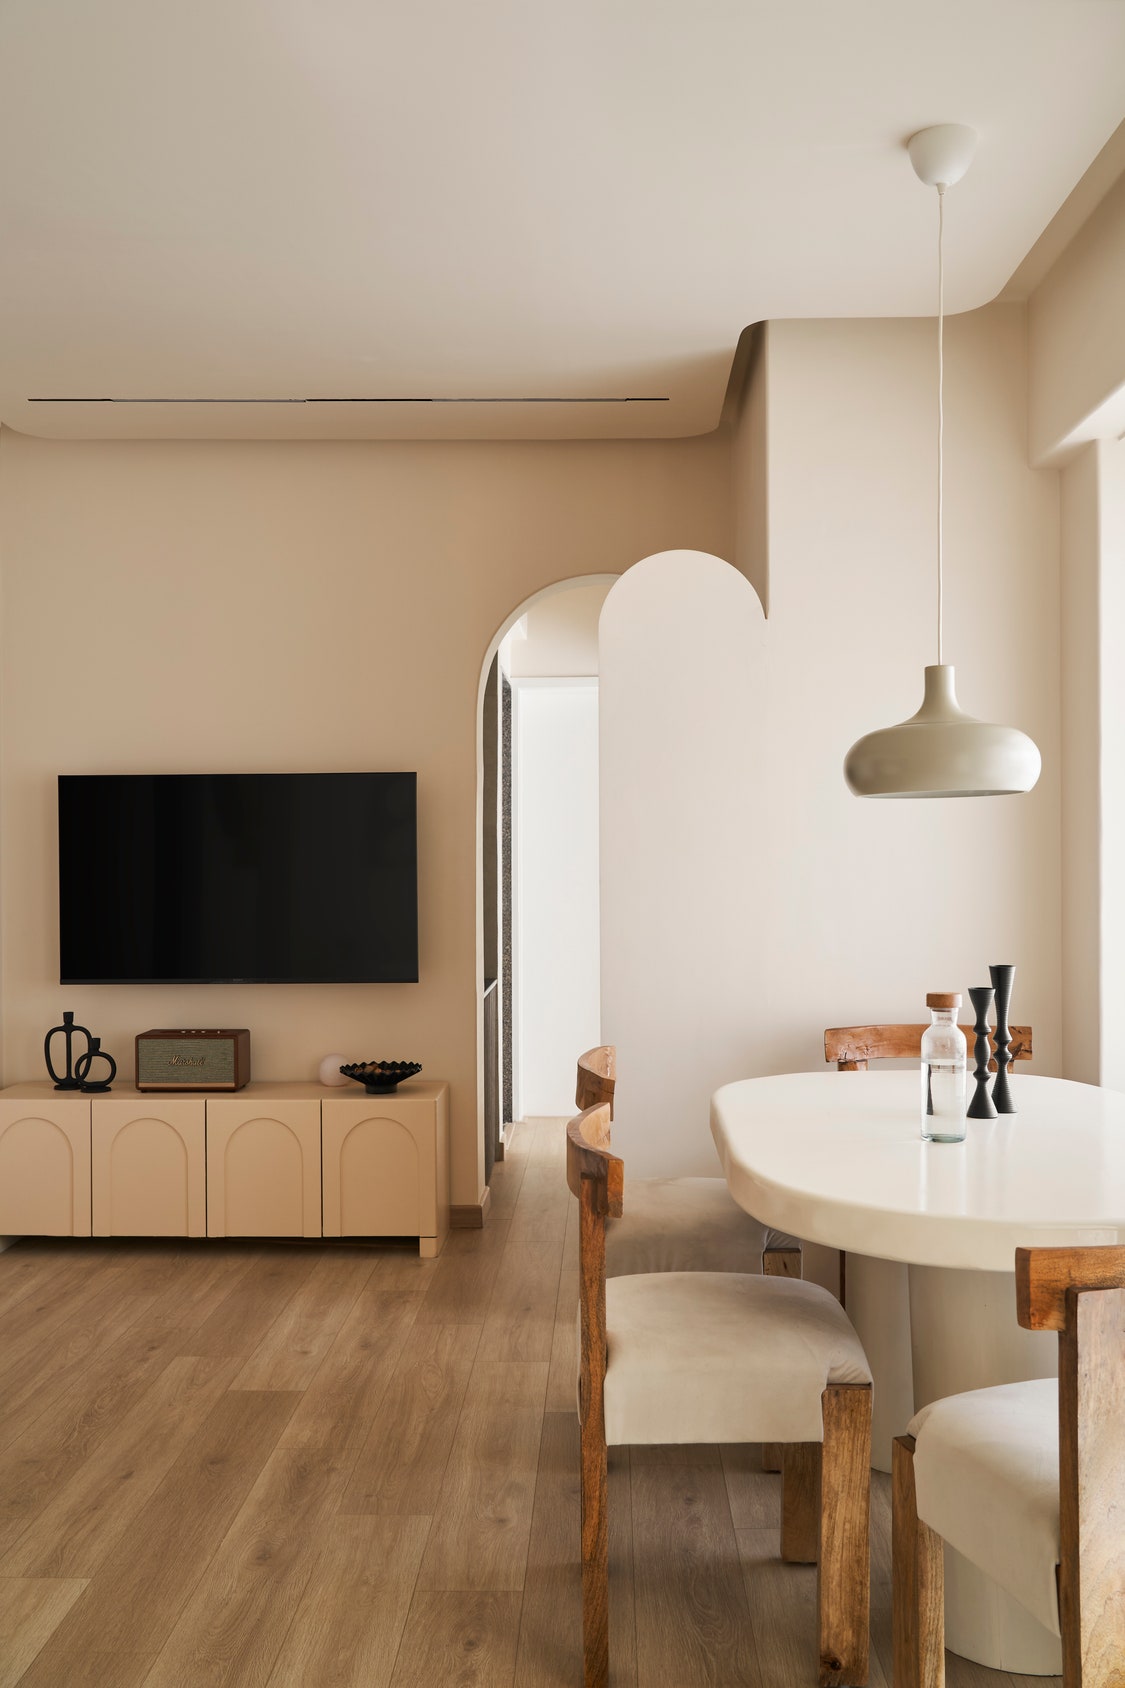 die lösung? minimalismus! von einer 68-quadratmeter-wohnung zum weitläufigen familien-zuhause